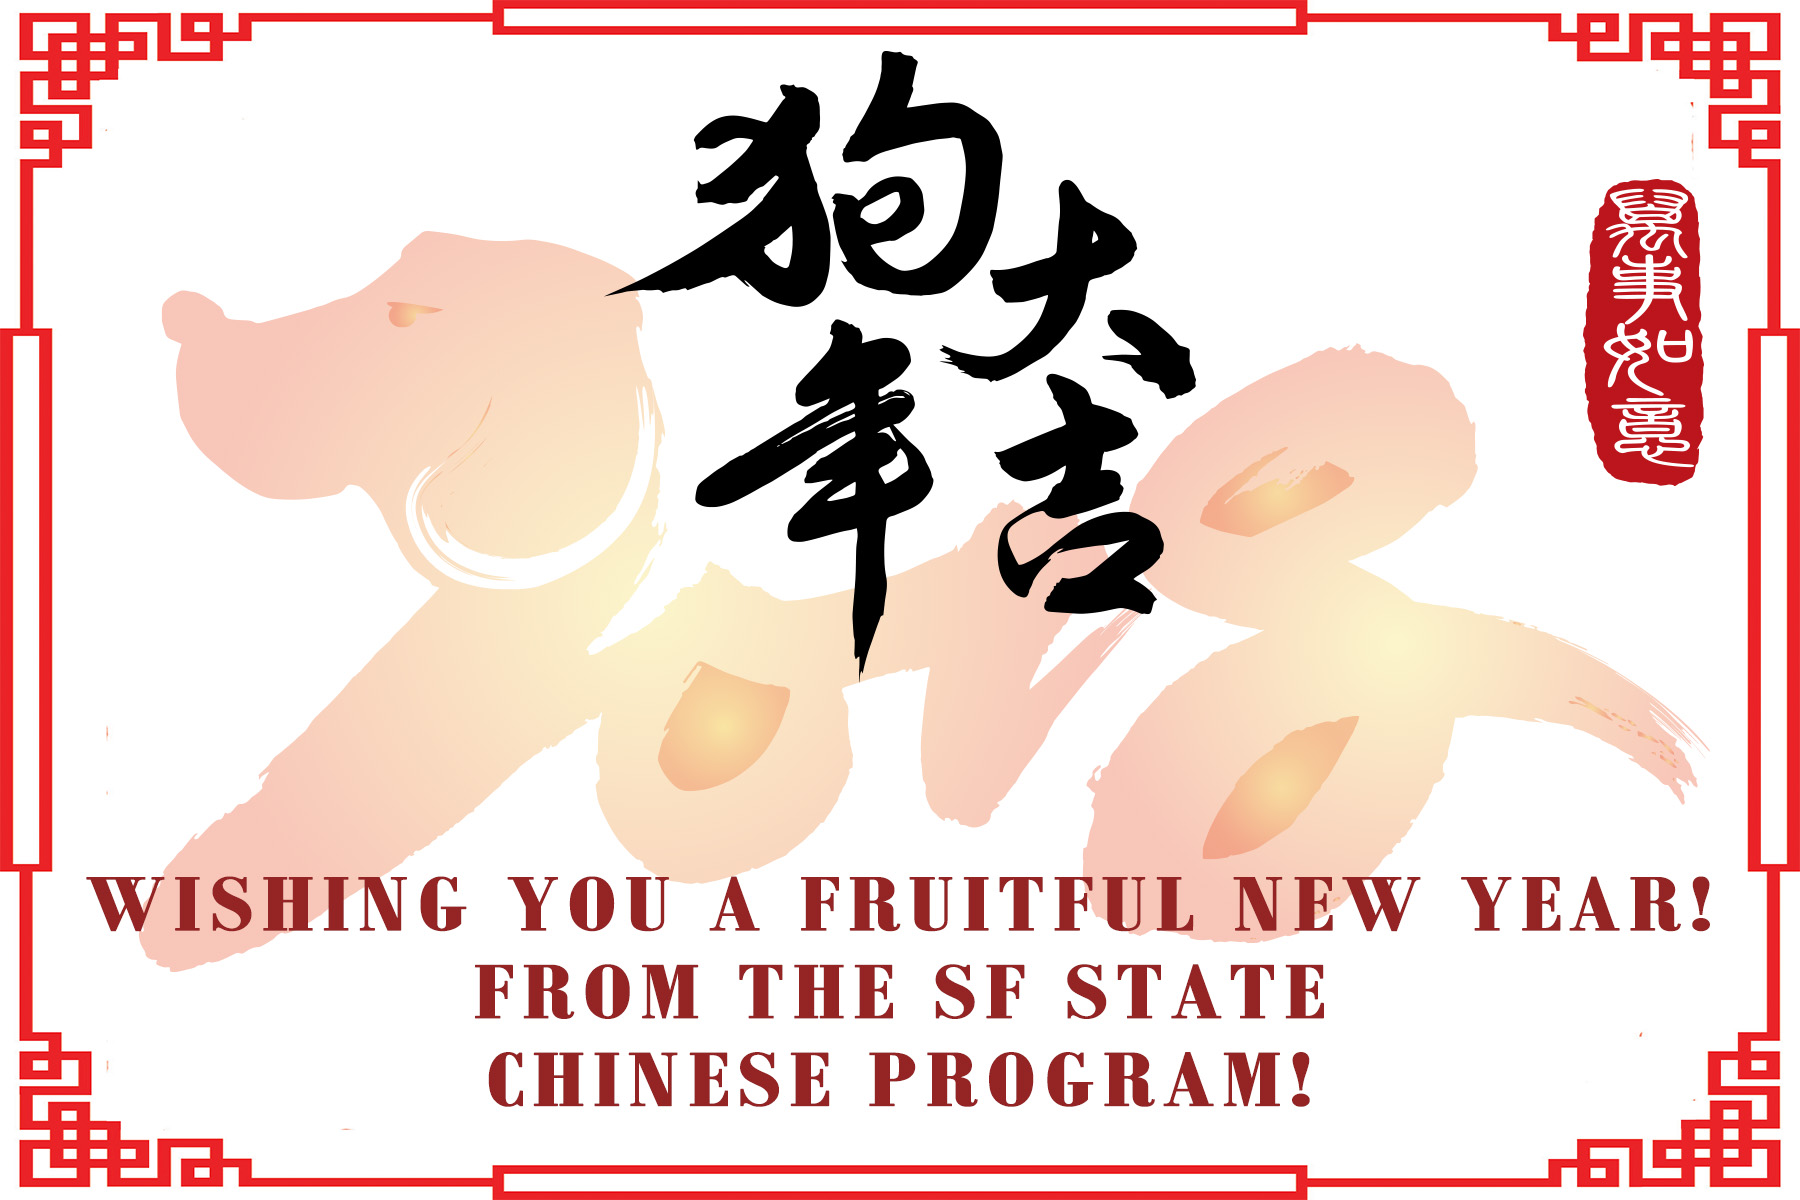 Chinese New Year 2018 invite